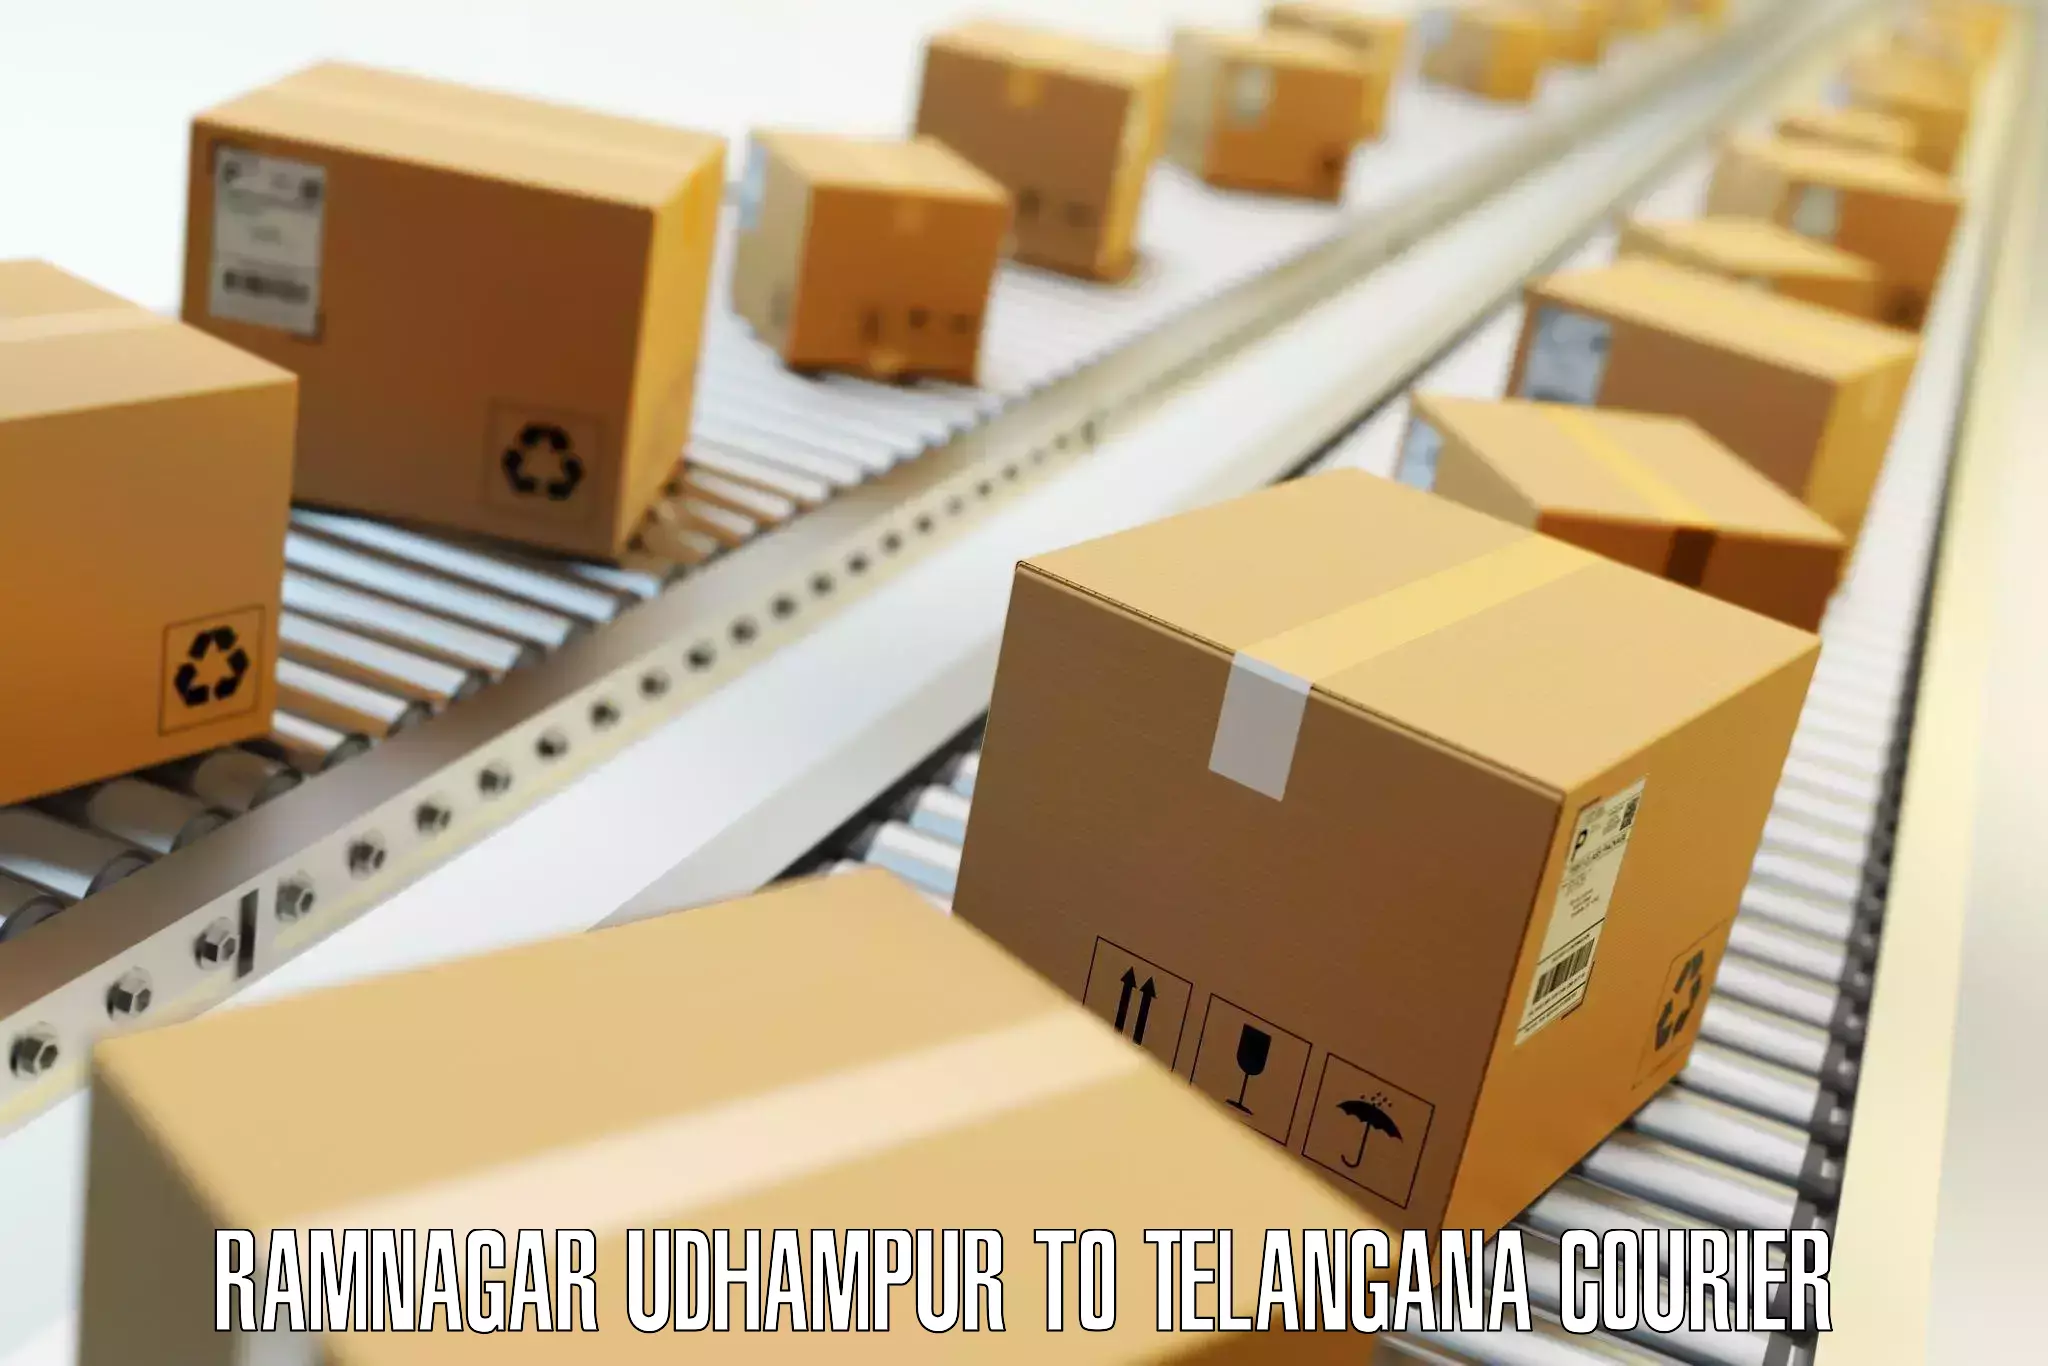 Baggage delivery optimization Ramnagar Udhampur to Vikarabad